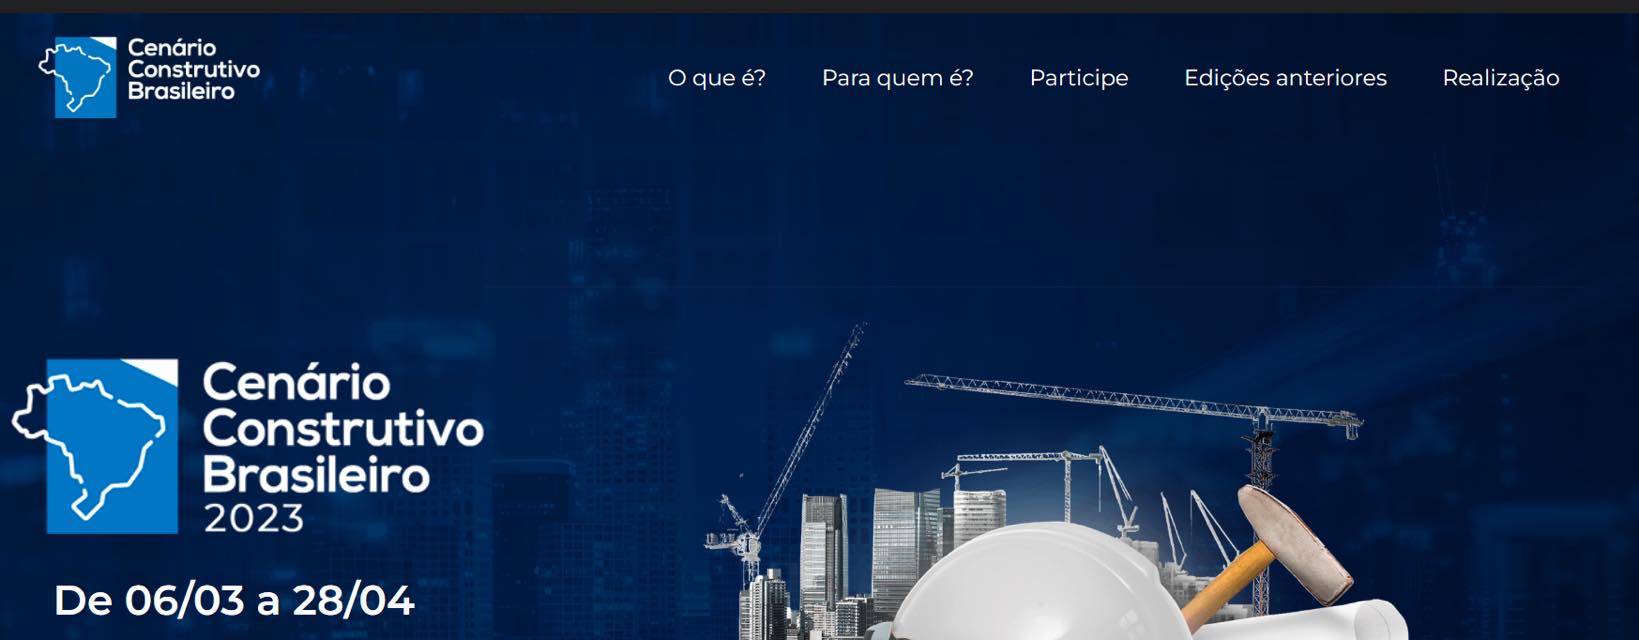 Cenário Construtivo Brasileiro 2023